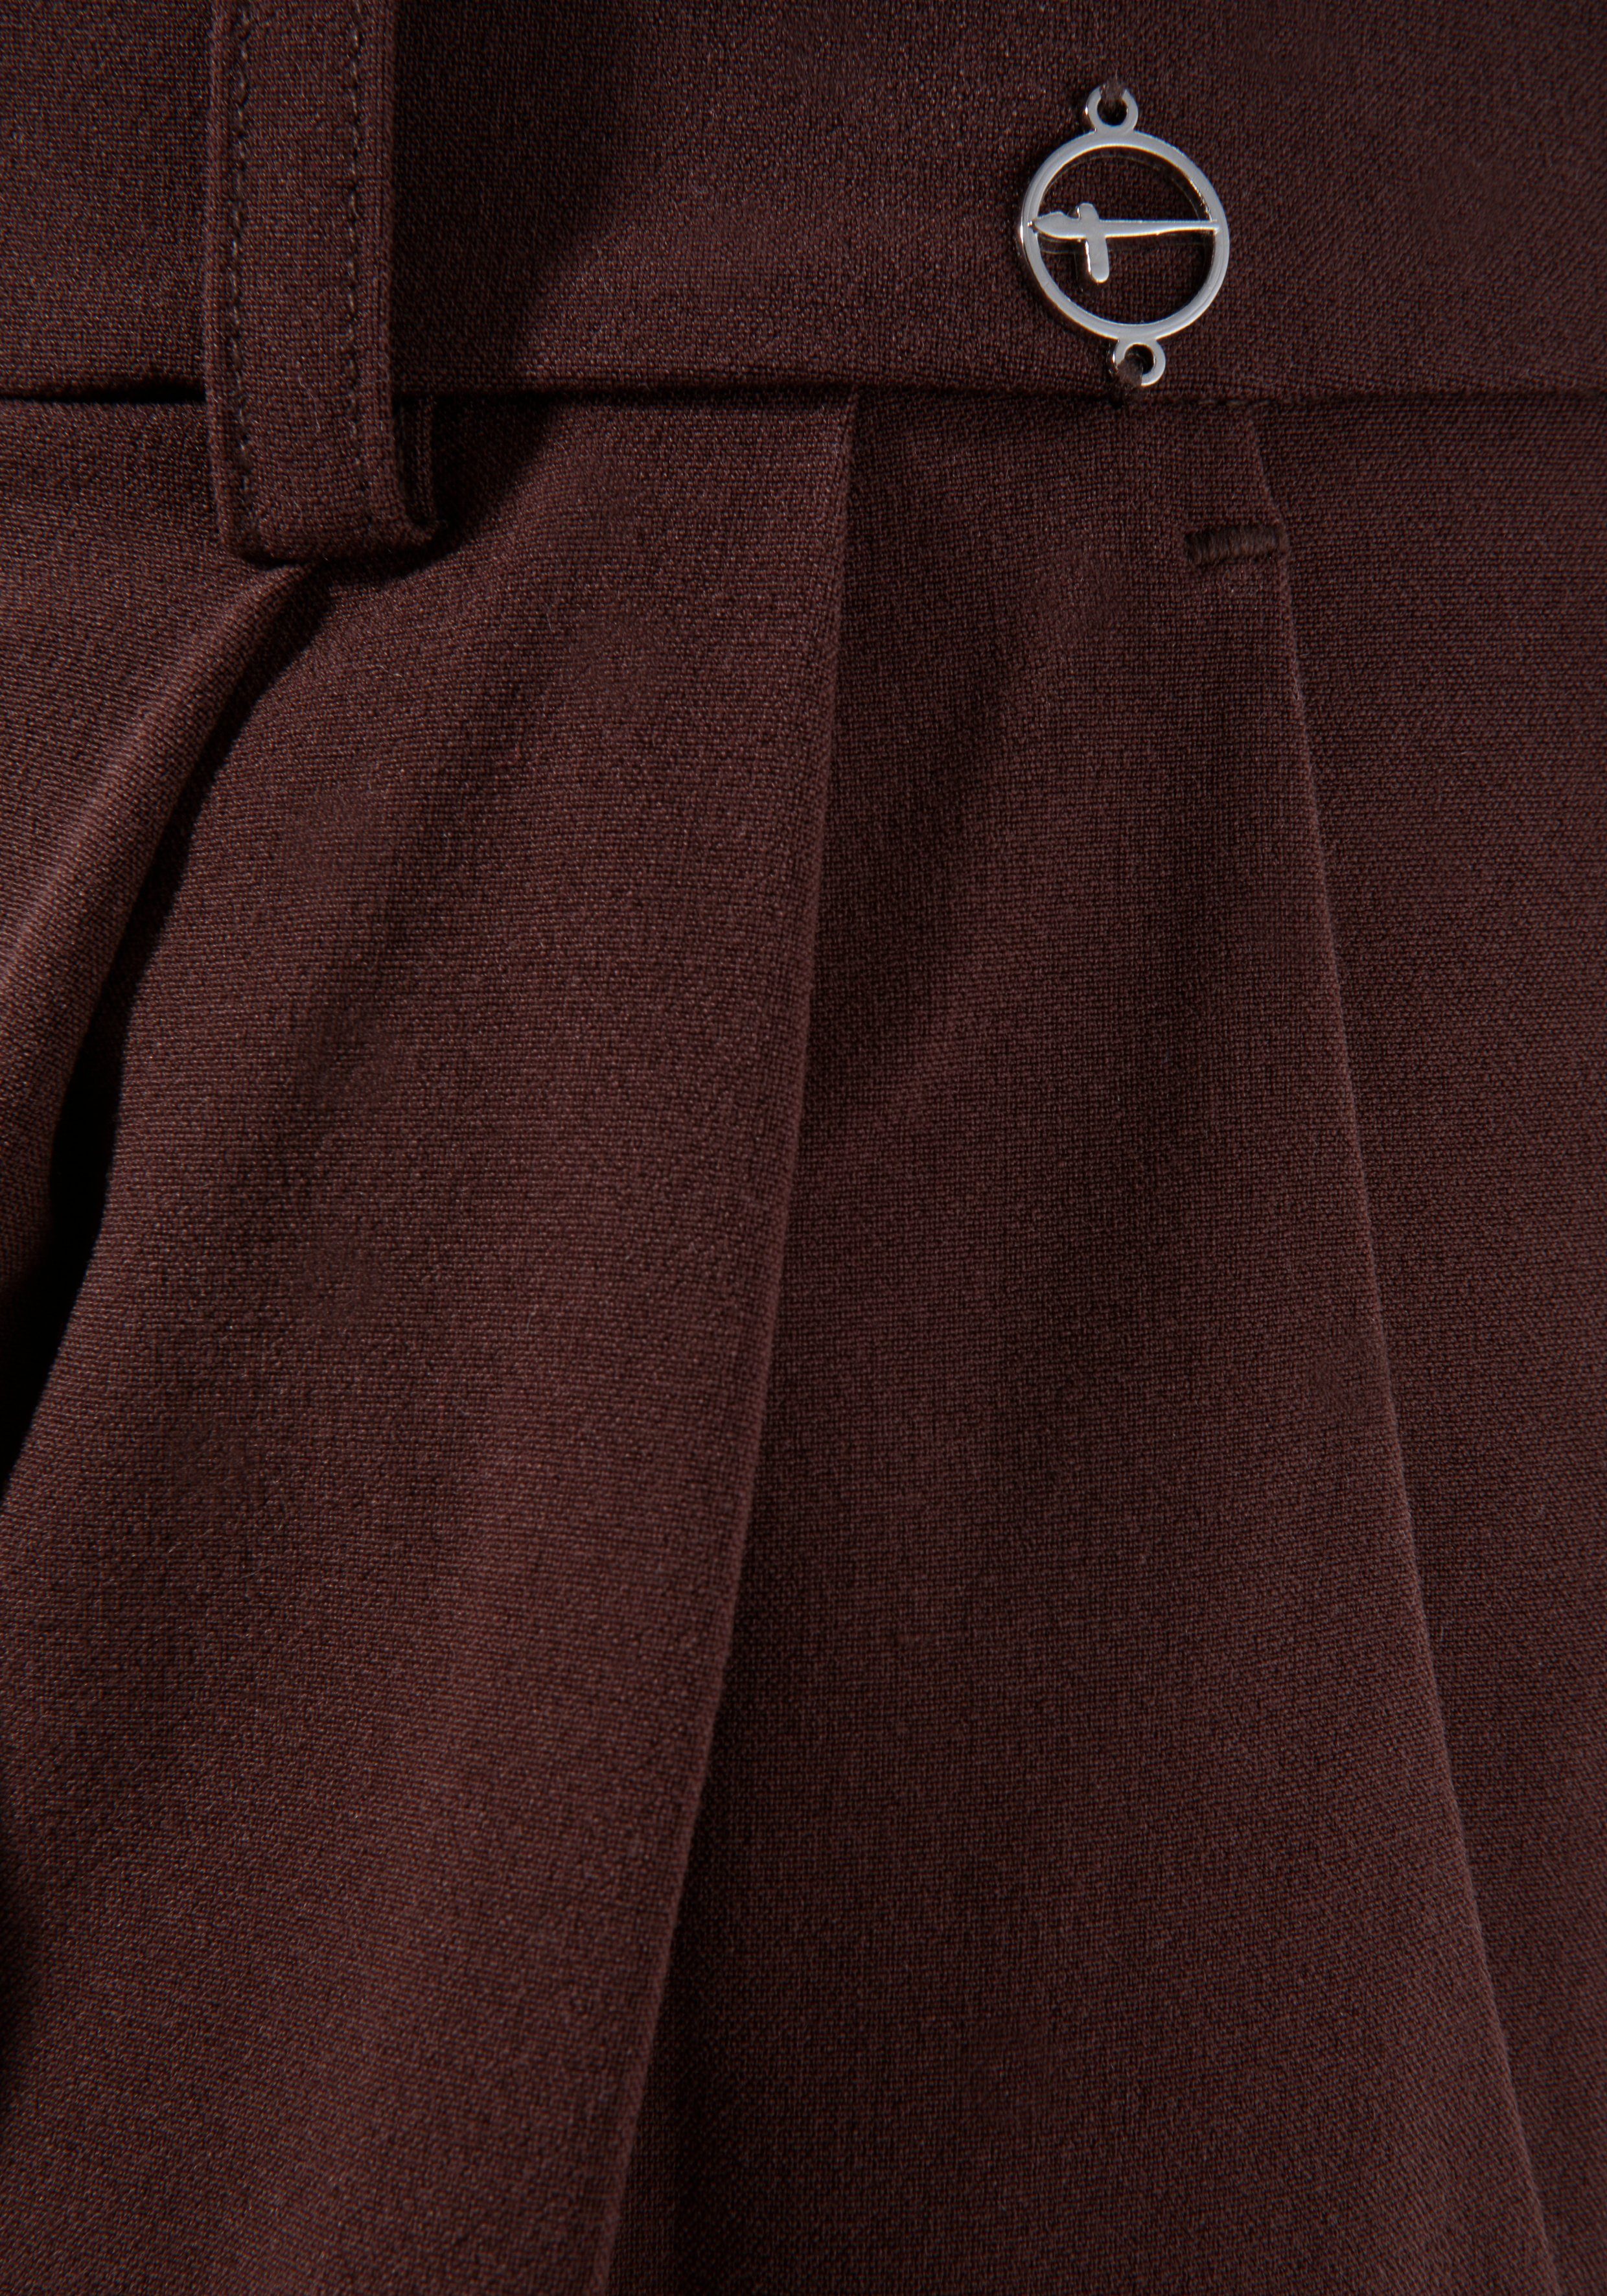 nachhaltigem Material) Anzughose (Hose weitem mit aus braun Tamaris Bein